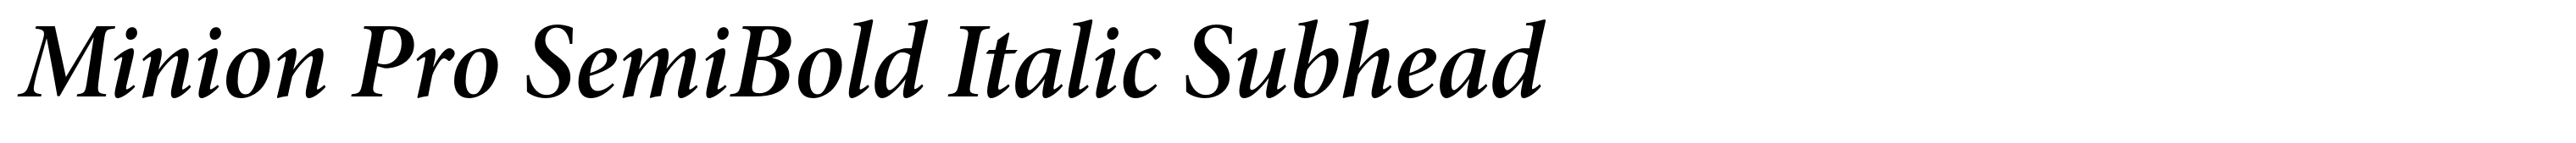 Minion Pro SemiBold Italic Subhead